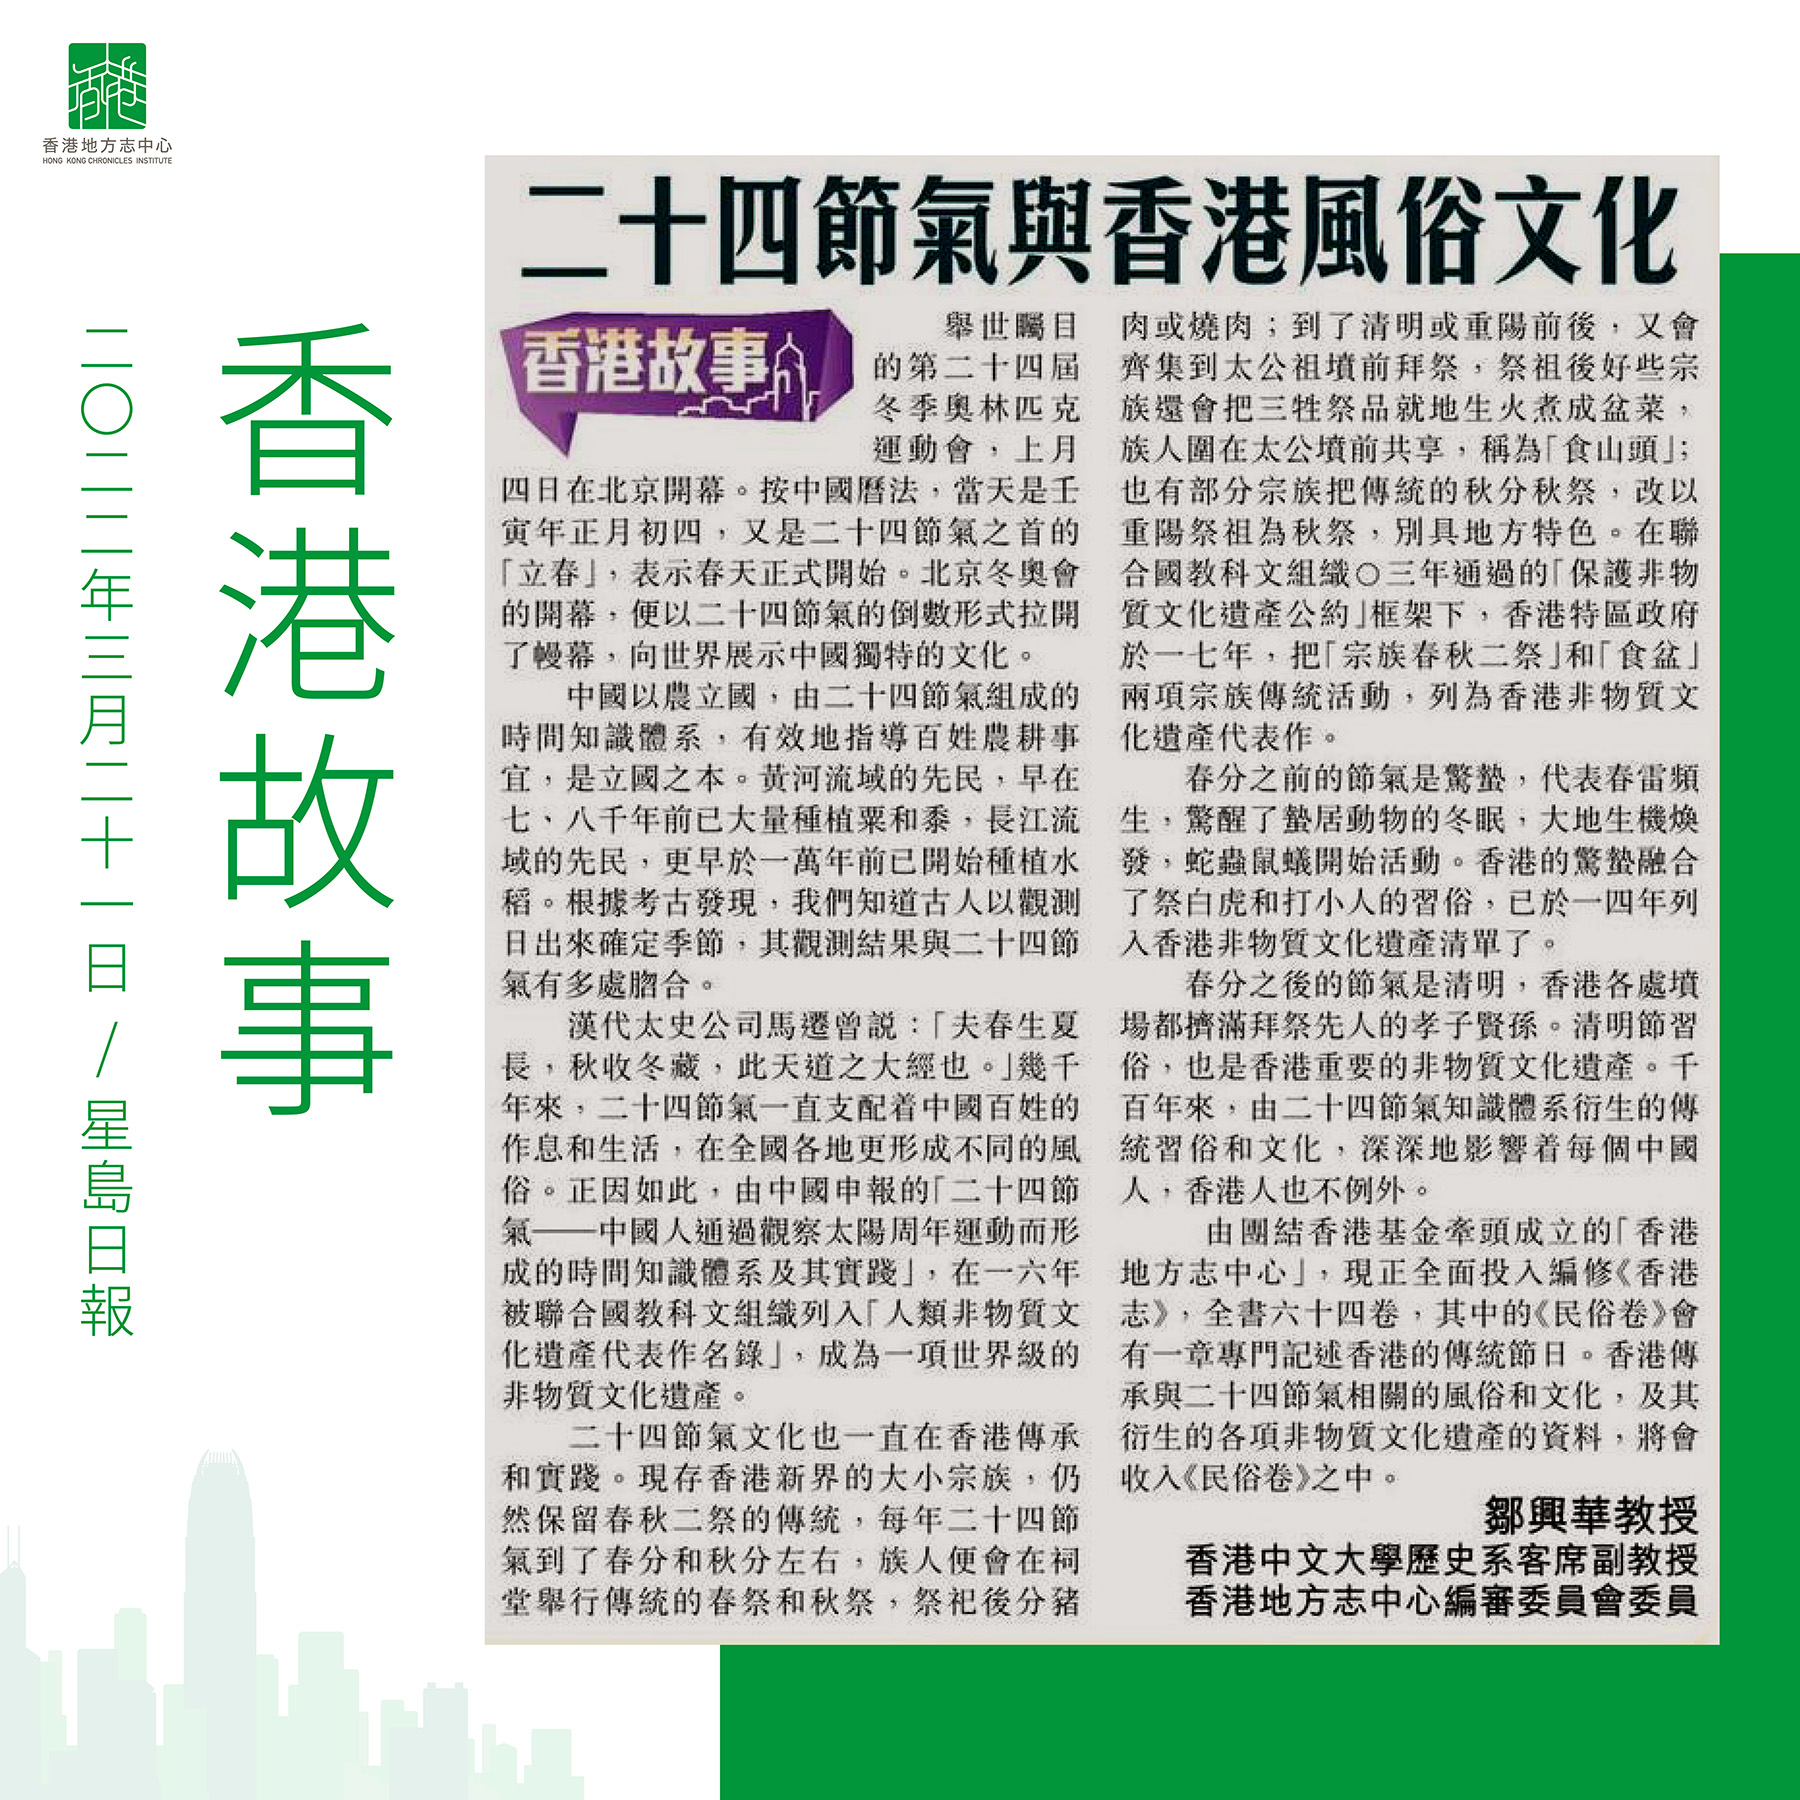 鄒興華教授:《二十四節氣與香港風俗文化》